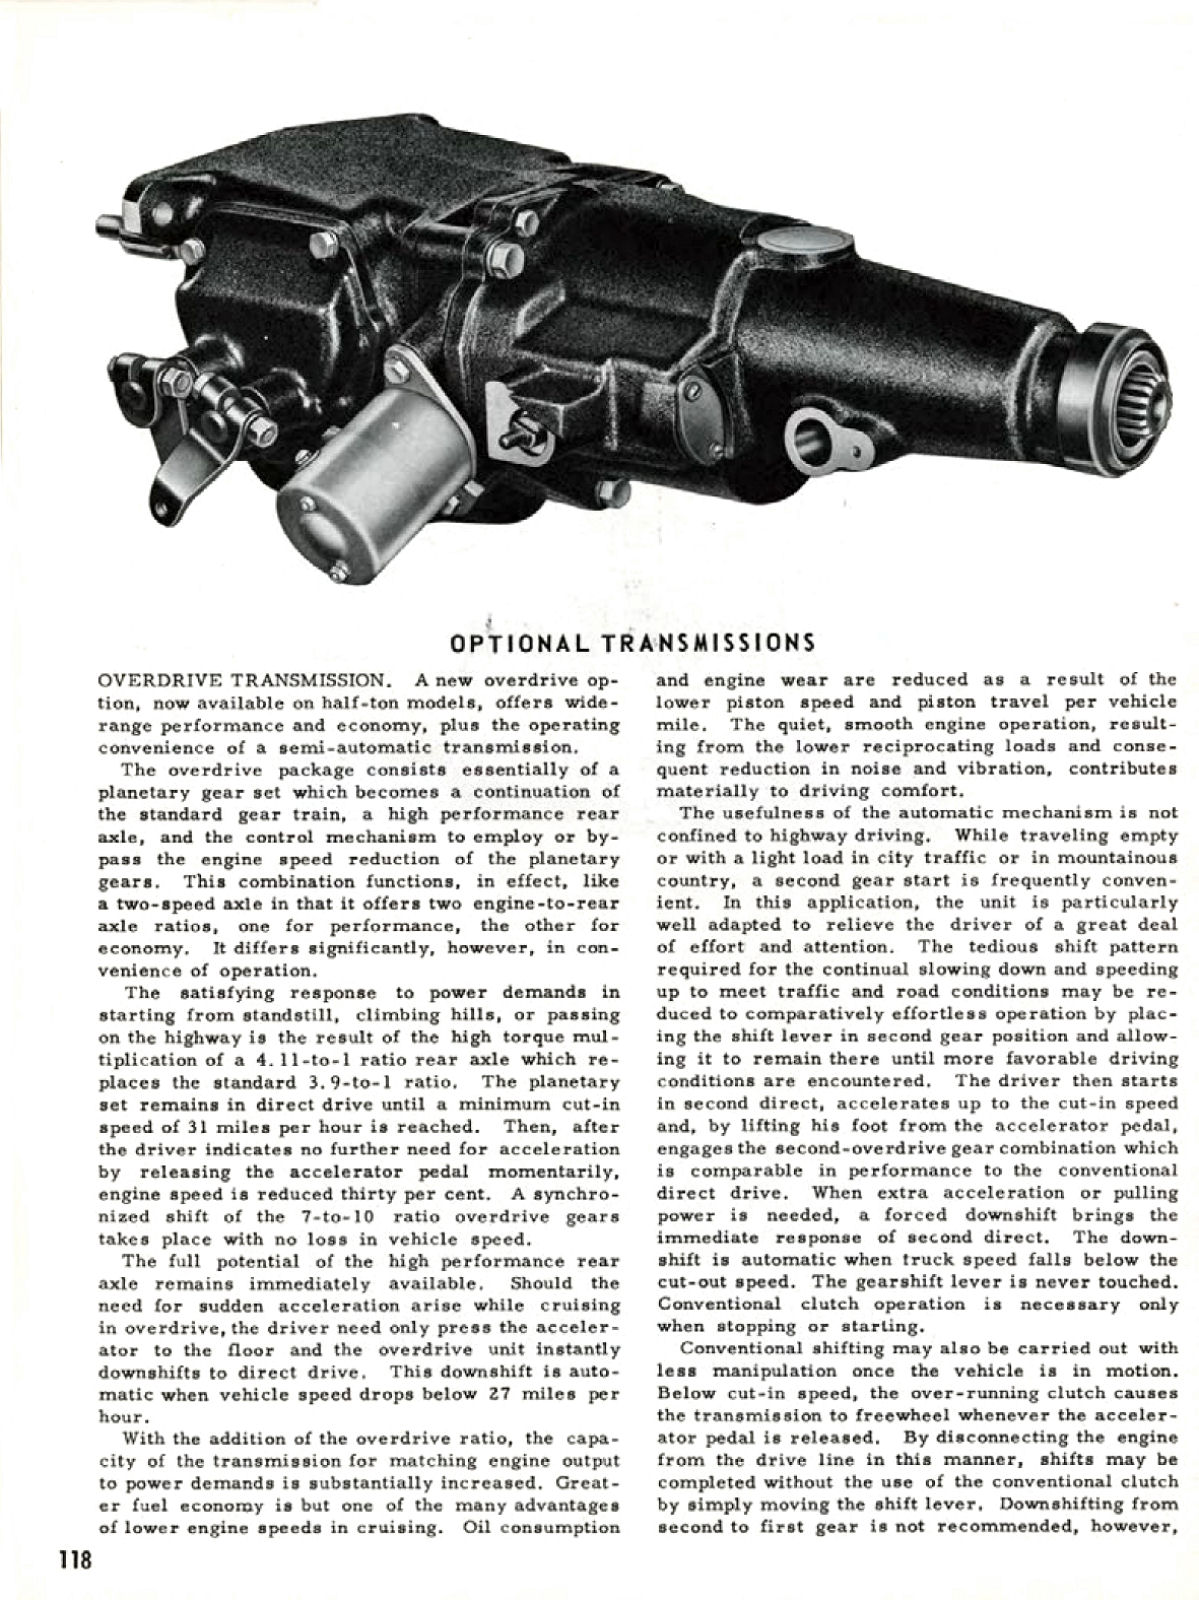 1955_Chevrolet_Truck_Engineering_Features-118